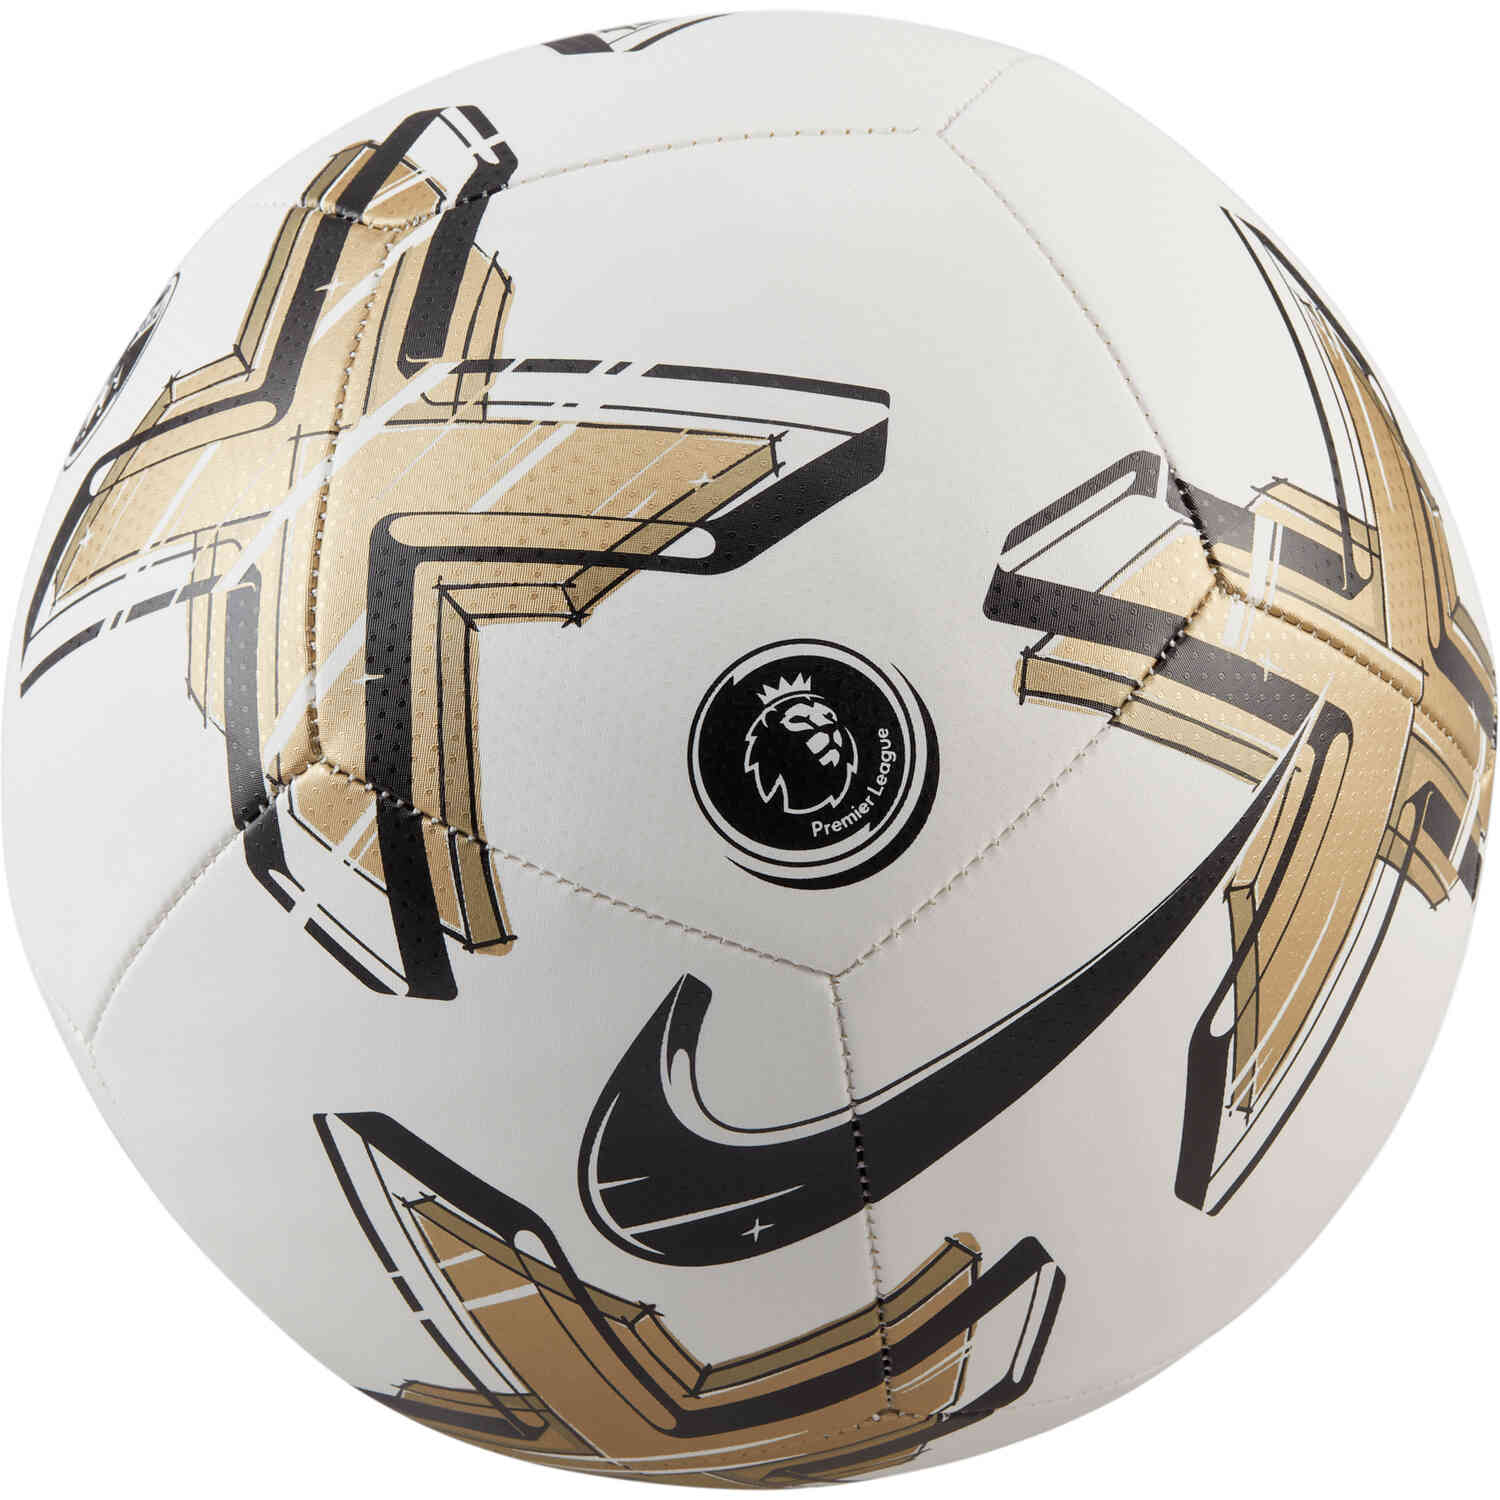 Mordrin Comandante raya Nike Premier League Pitch Soccer Ball - White & Gold with Black - SoccerPro